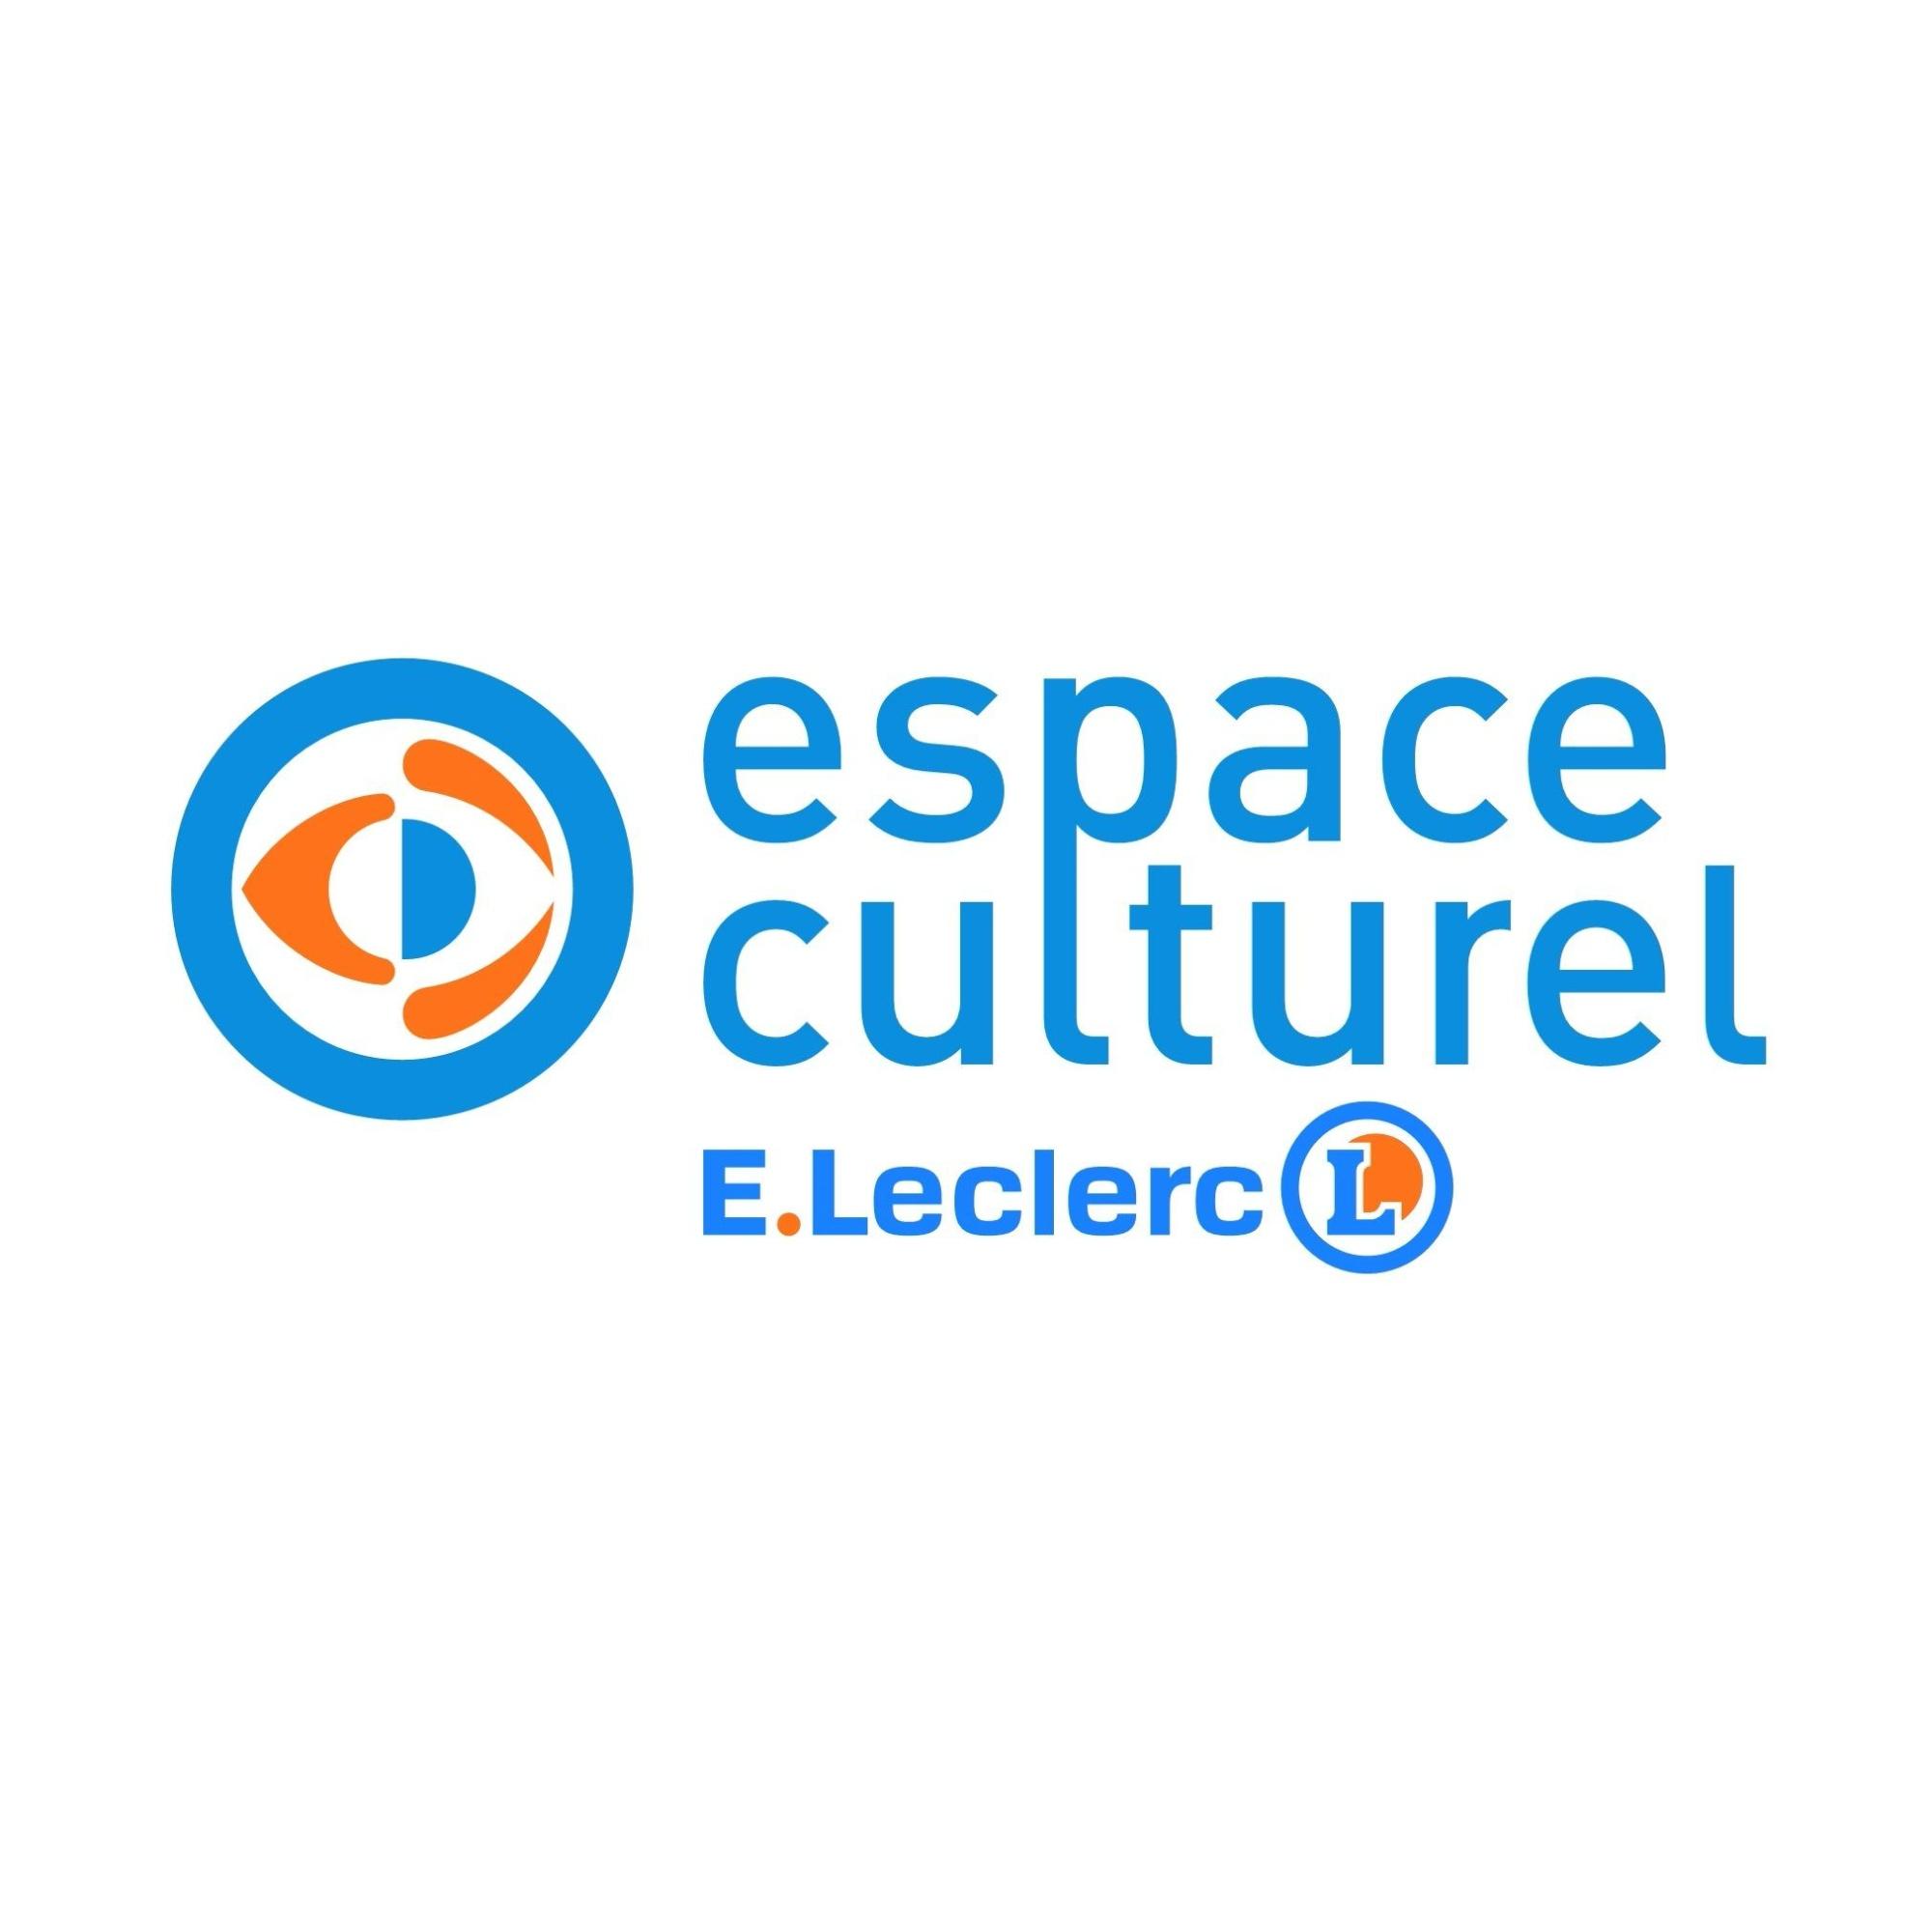 E.leclerc Espace Culturel Olivet